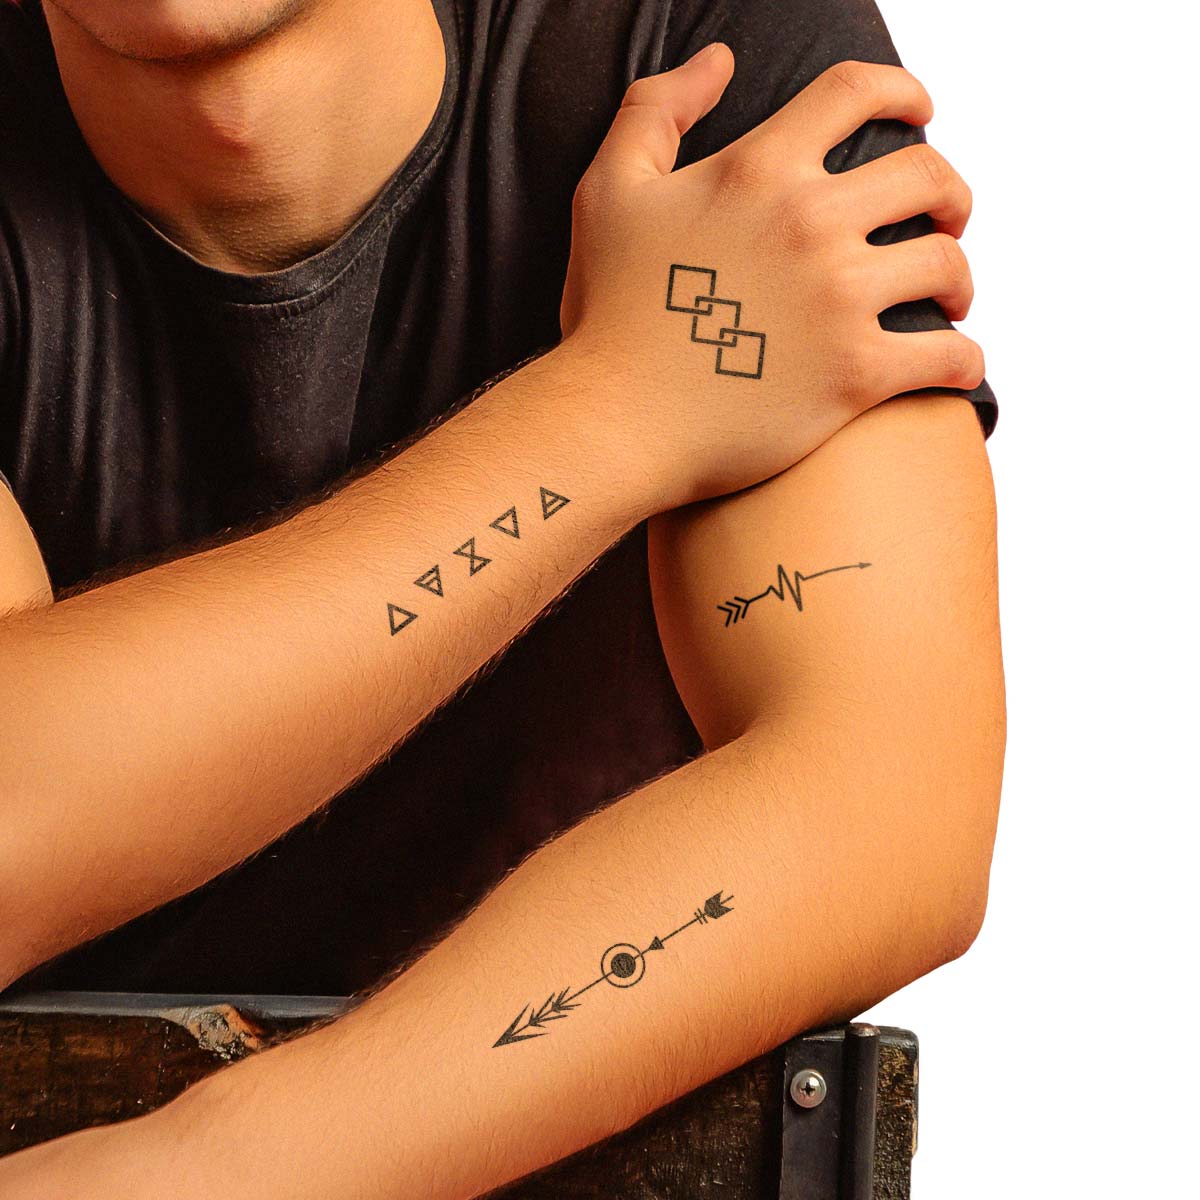 Le Inka Tattoos - Geometric Collection